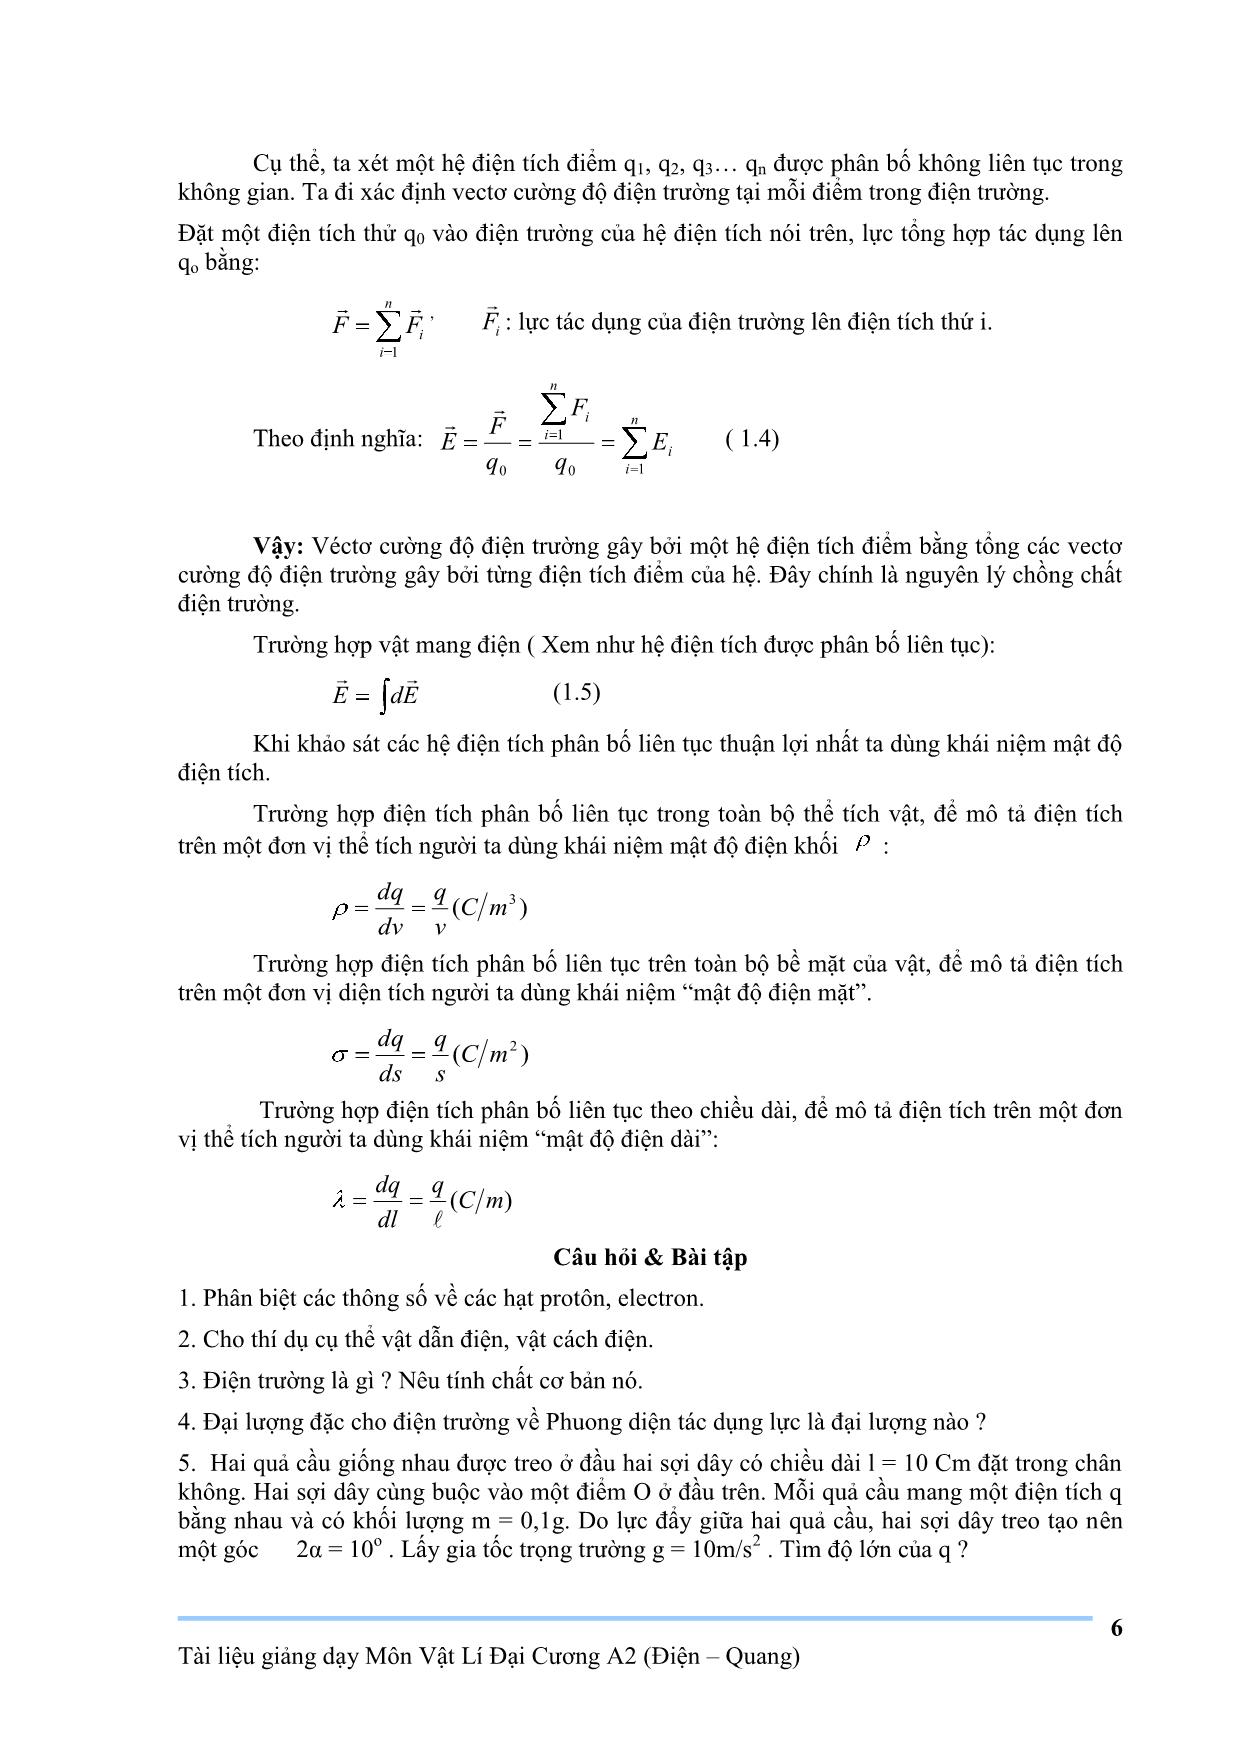 Giáo trình Vật lý đại cương A2 trang 6